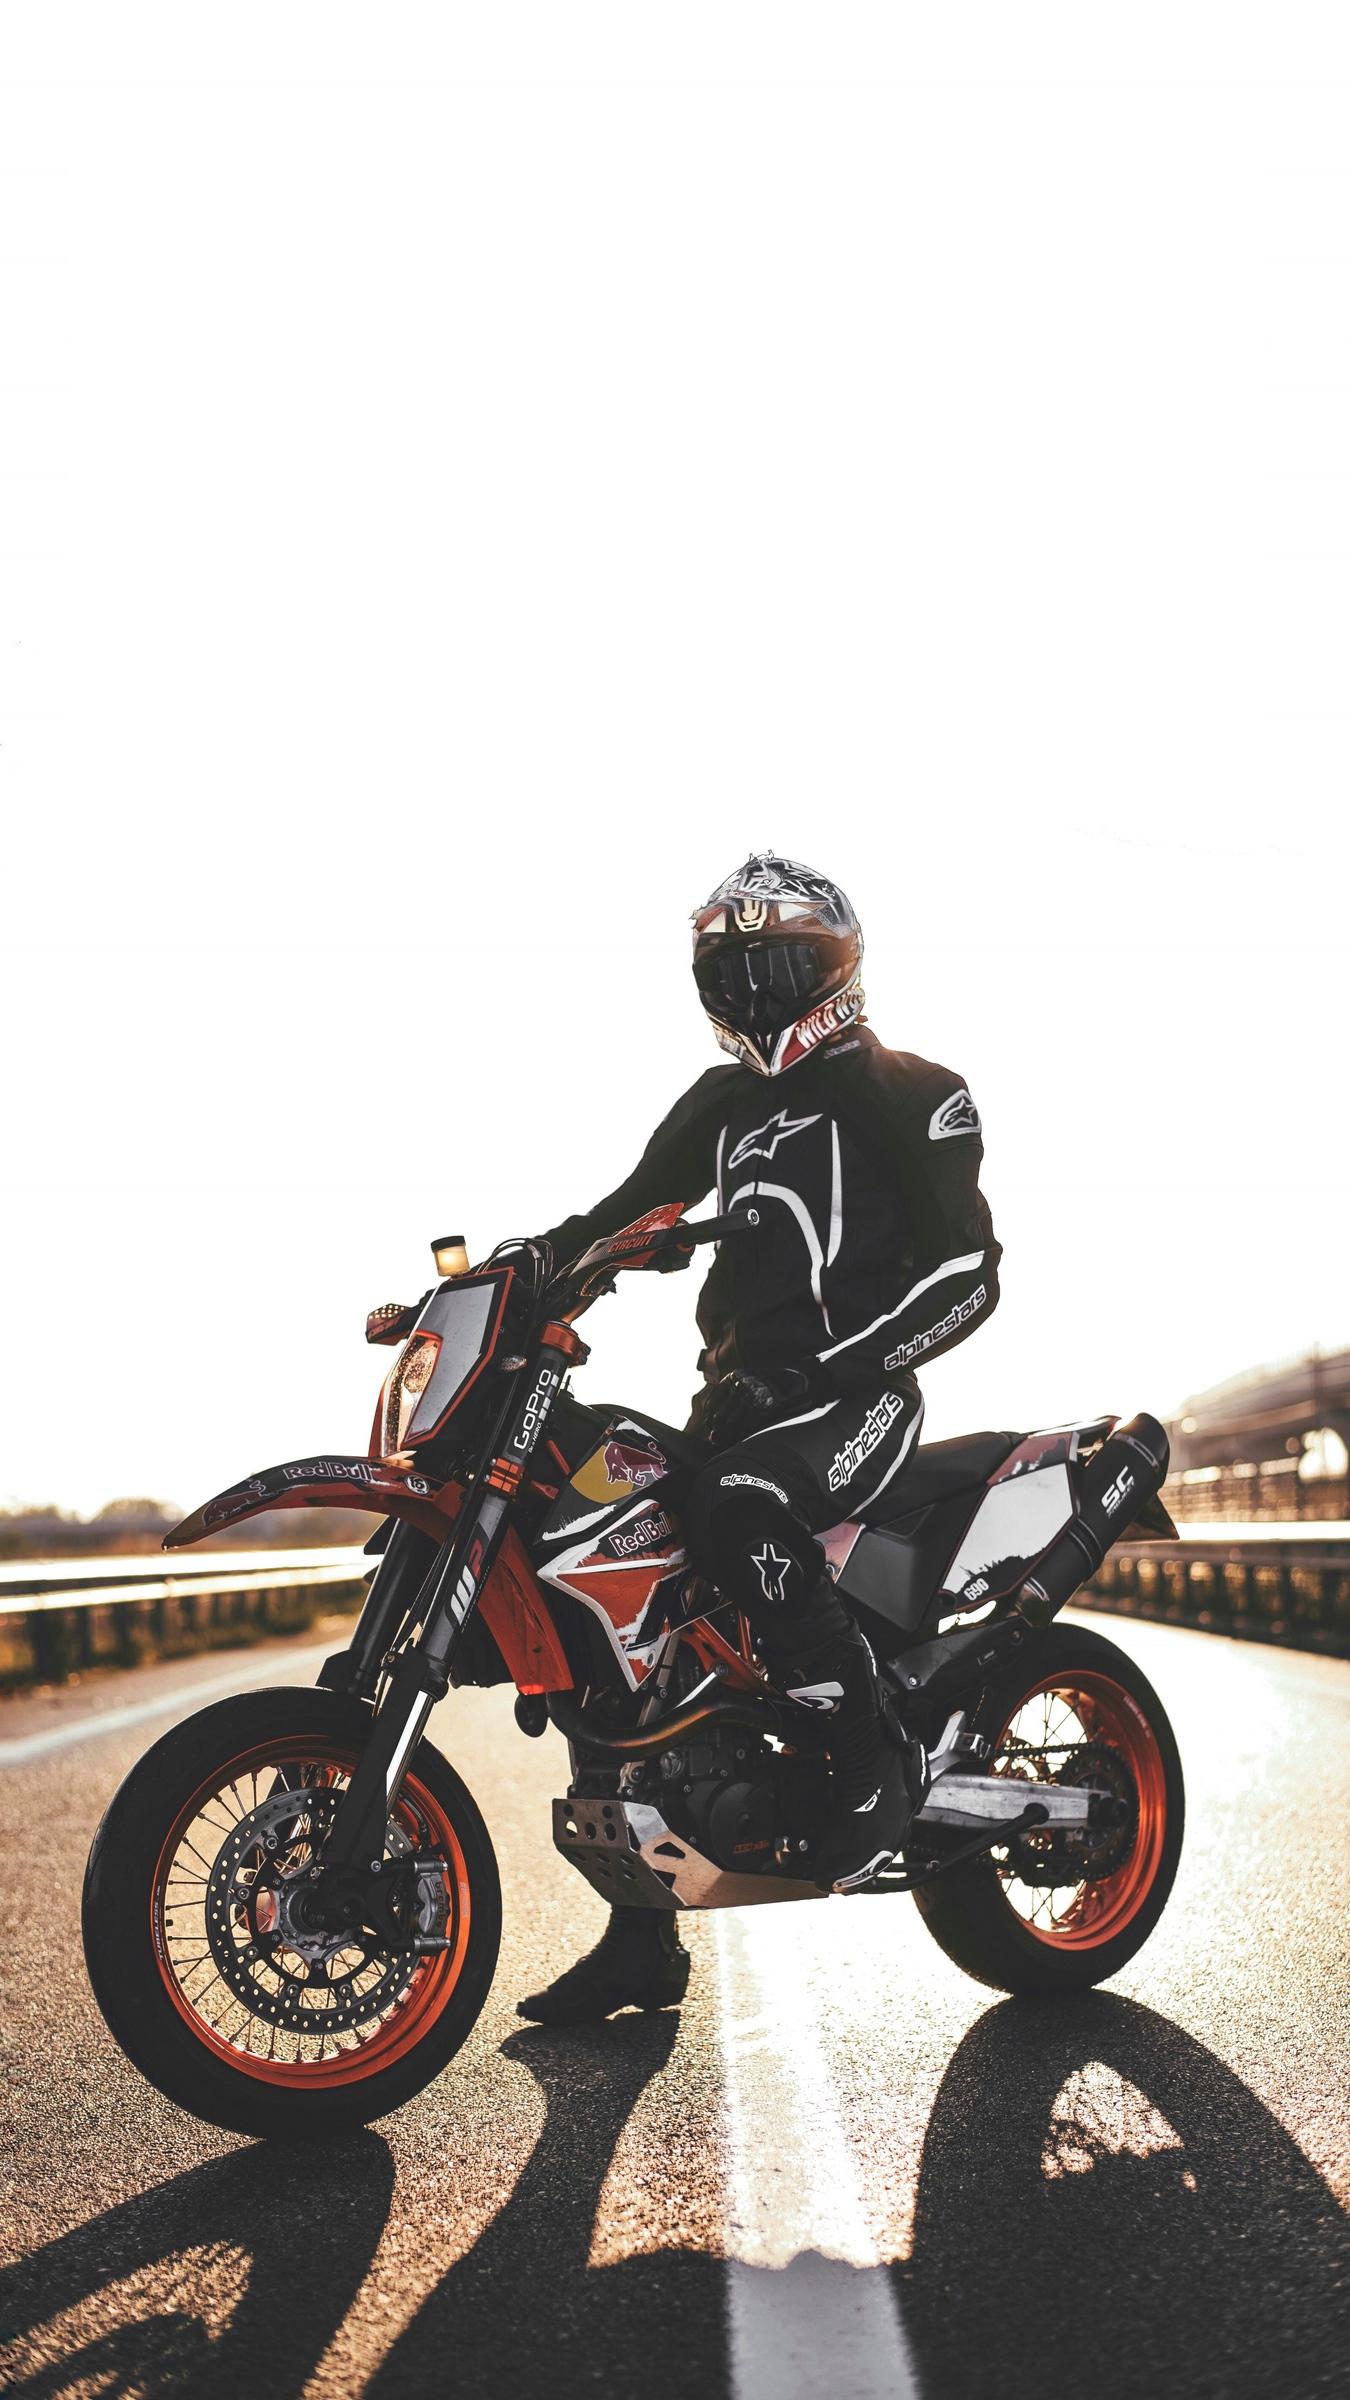 Download wallpaper 1350x2400 motorcyclist, motorcycle, helmet iphone